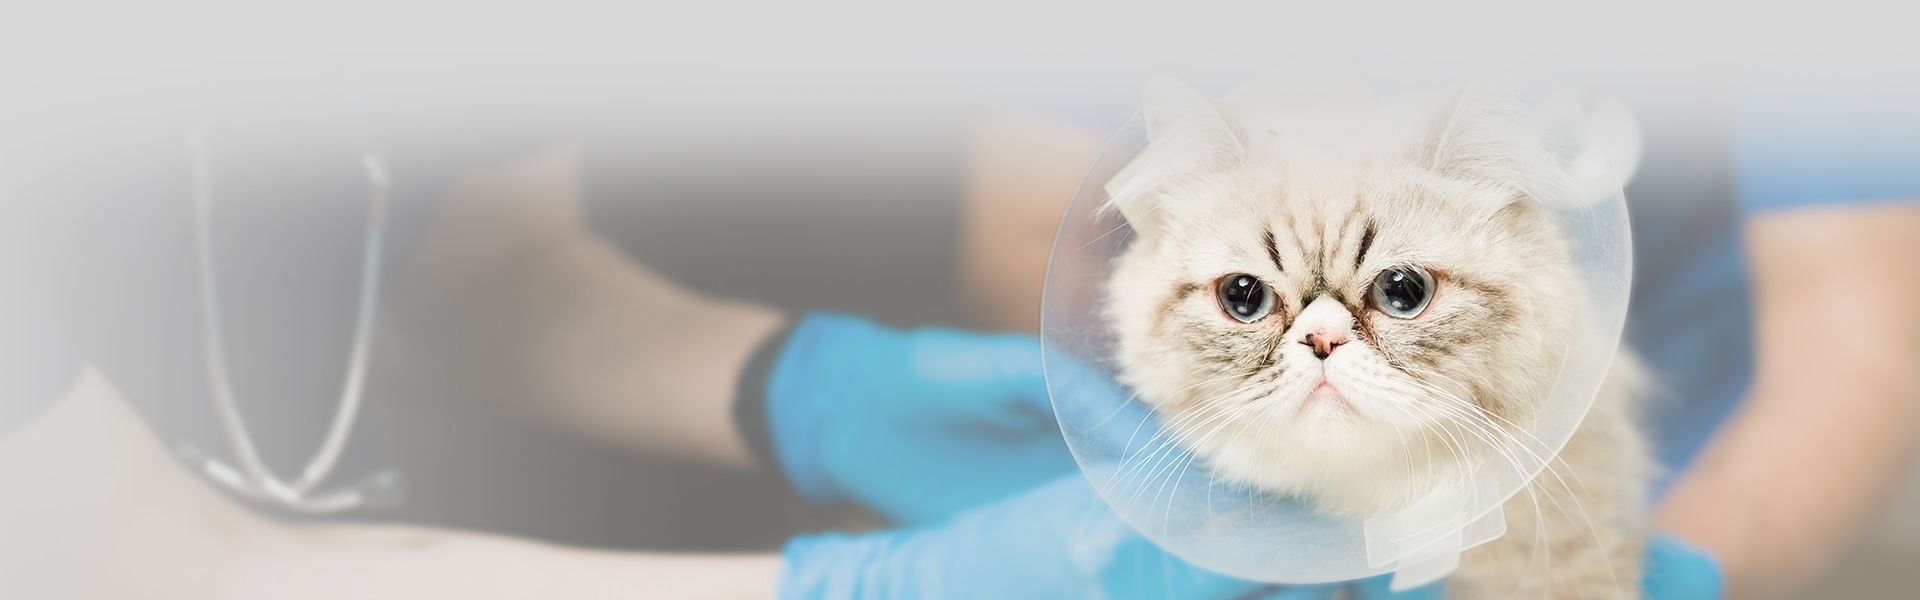 persian cat after surgery